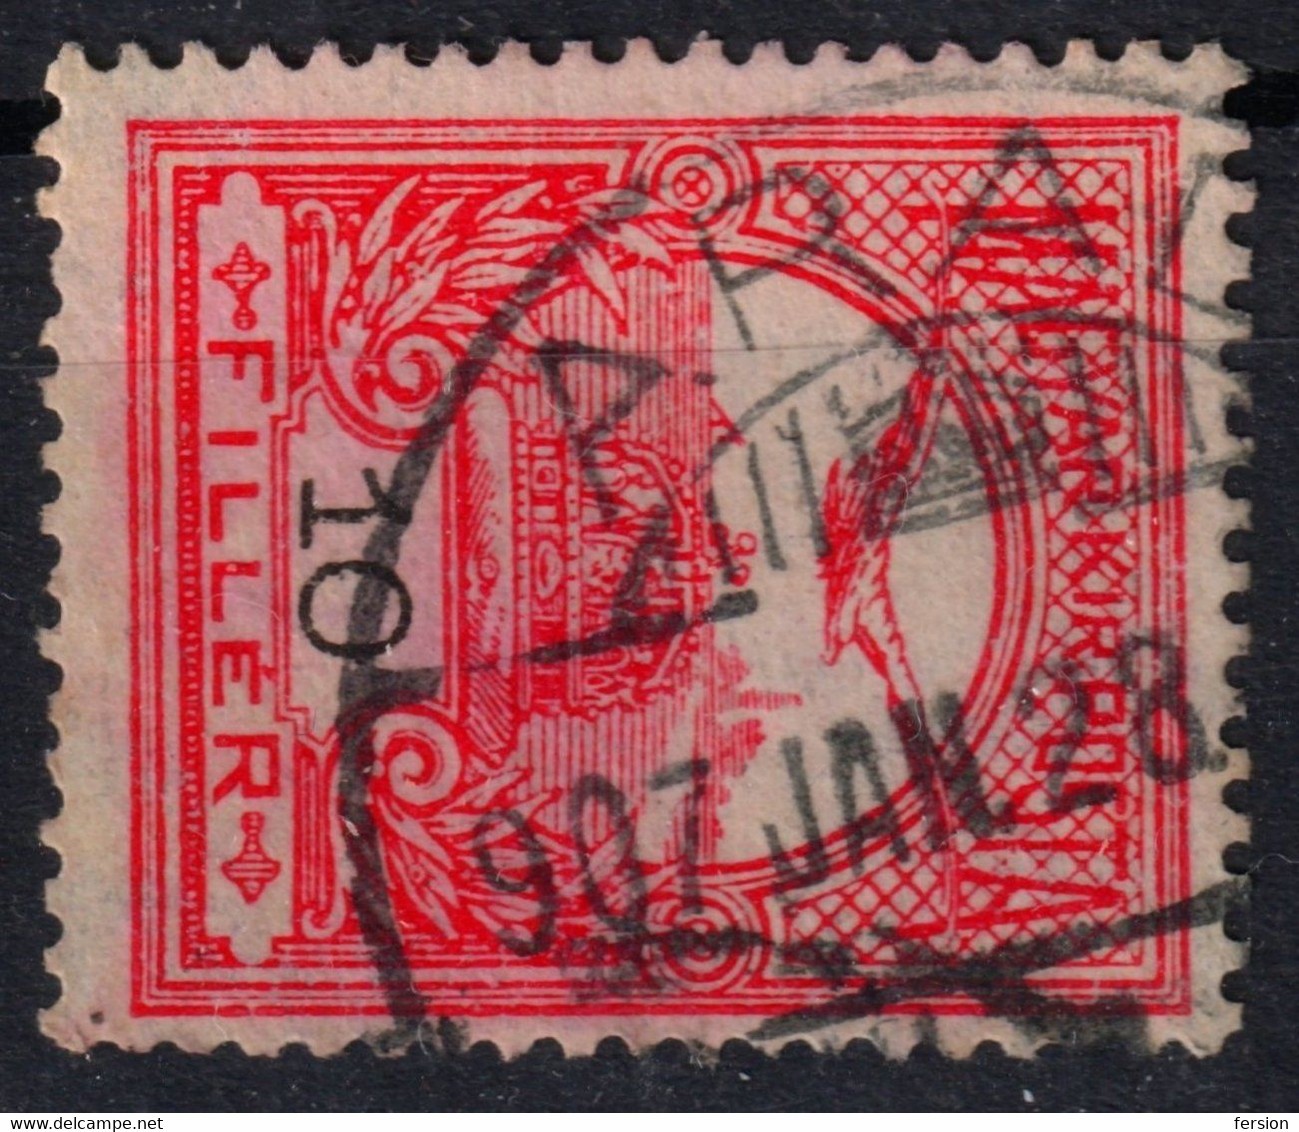 ARAD Postmark / TURUL Crown 1907 Hungary Romania Transylvania Banat ARAD County KuK - 10 Fill - Transilvania